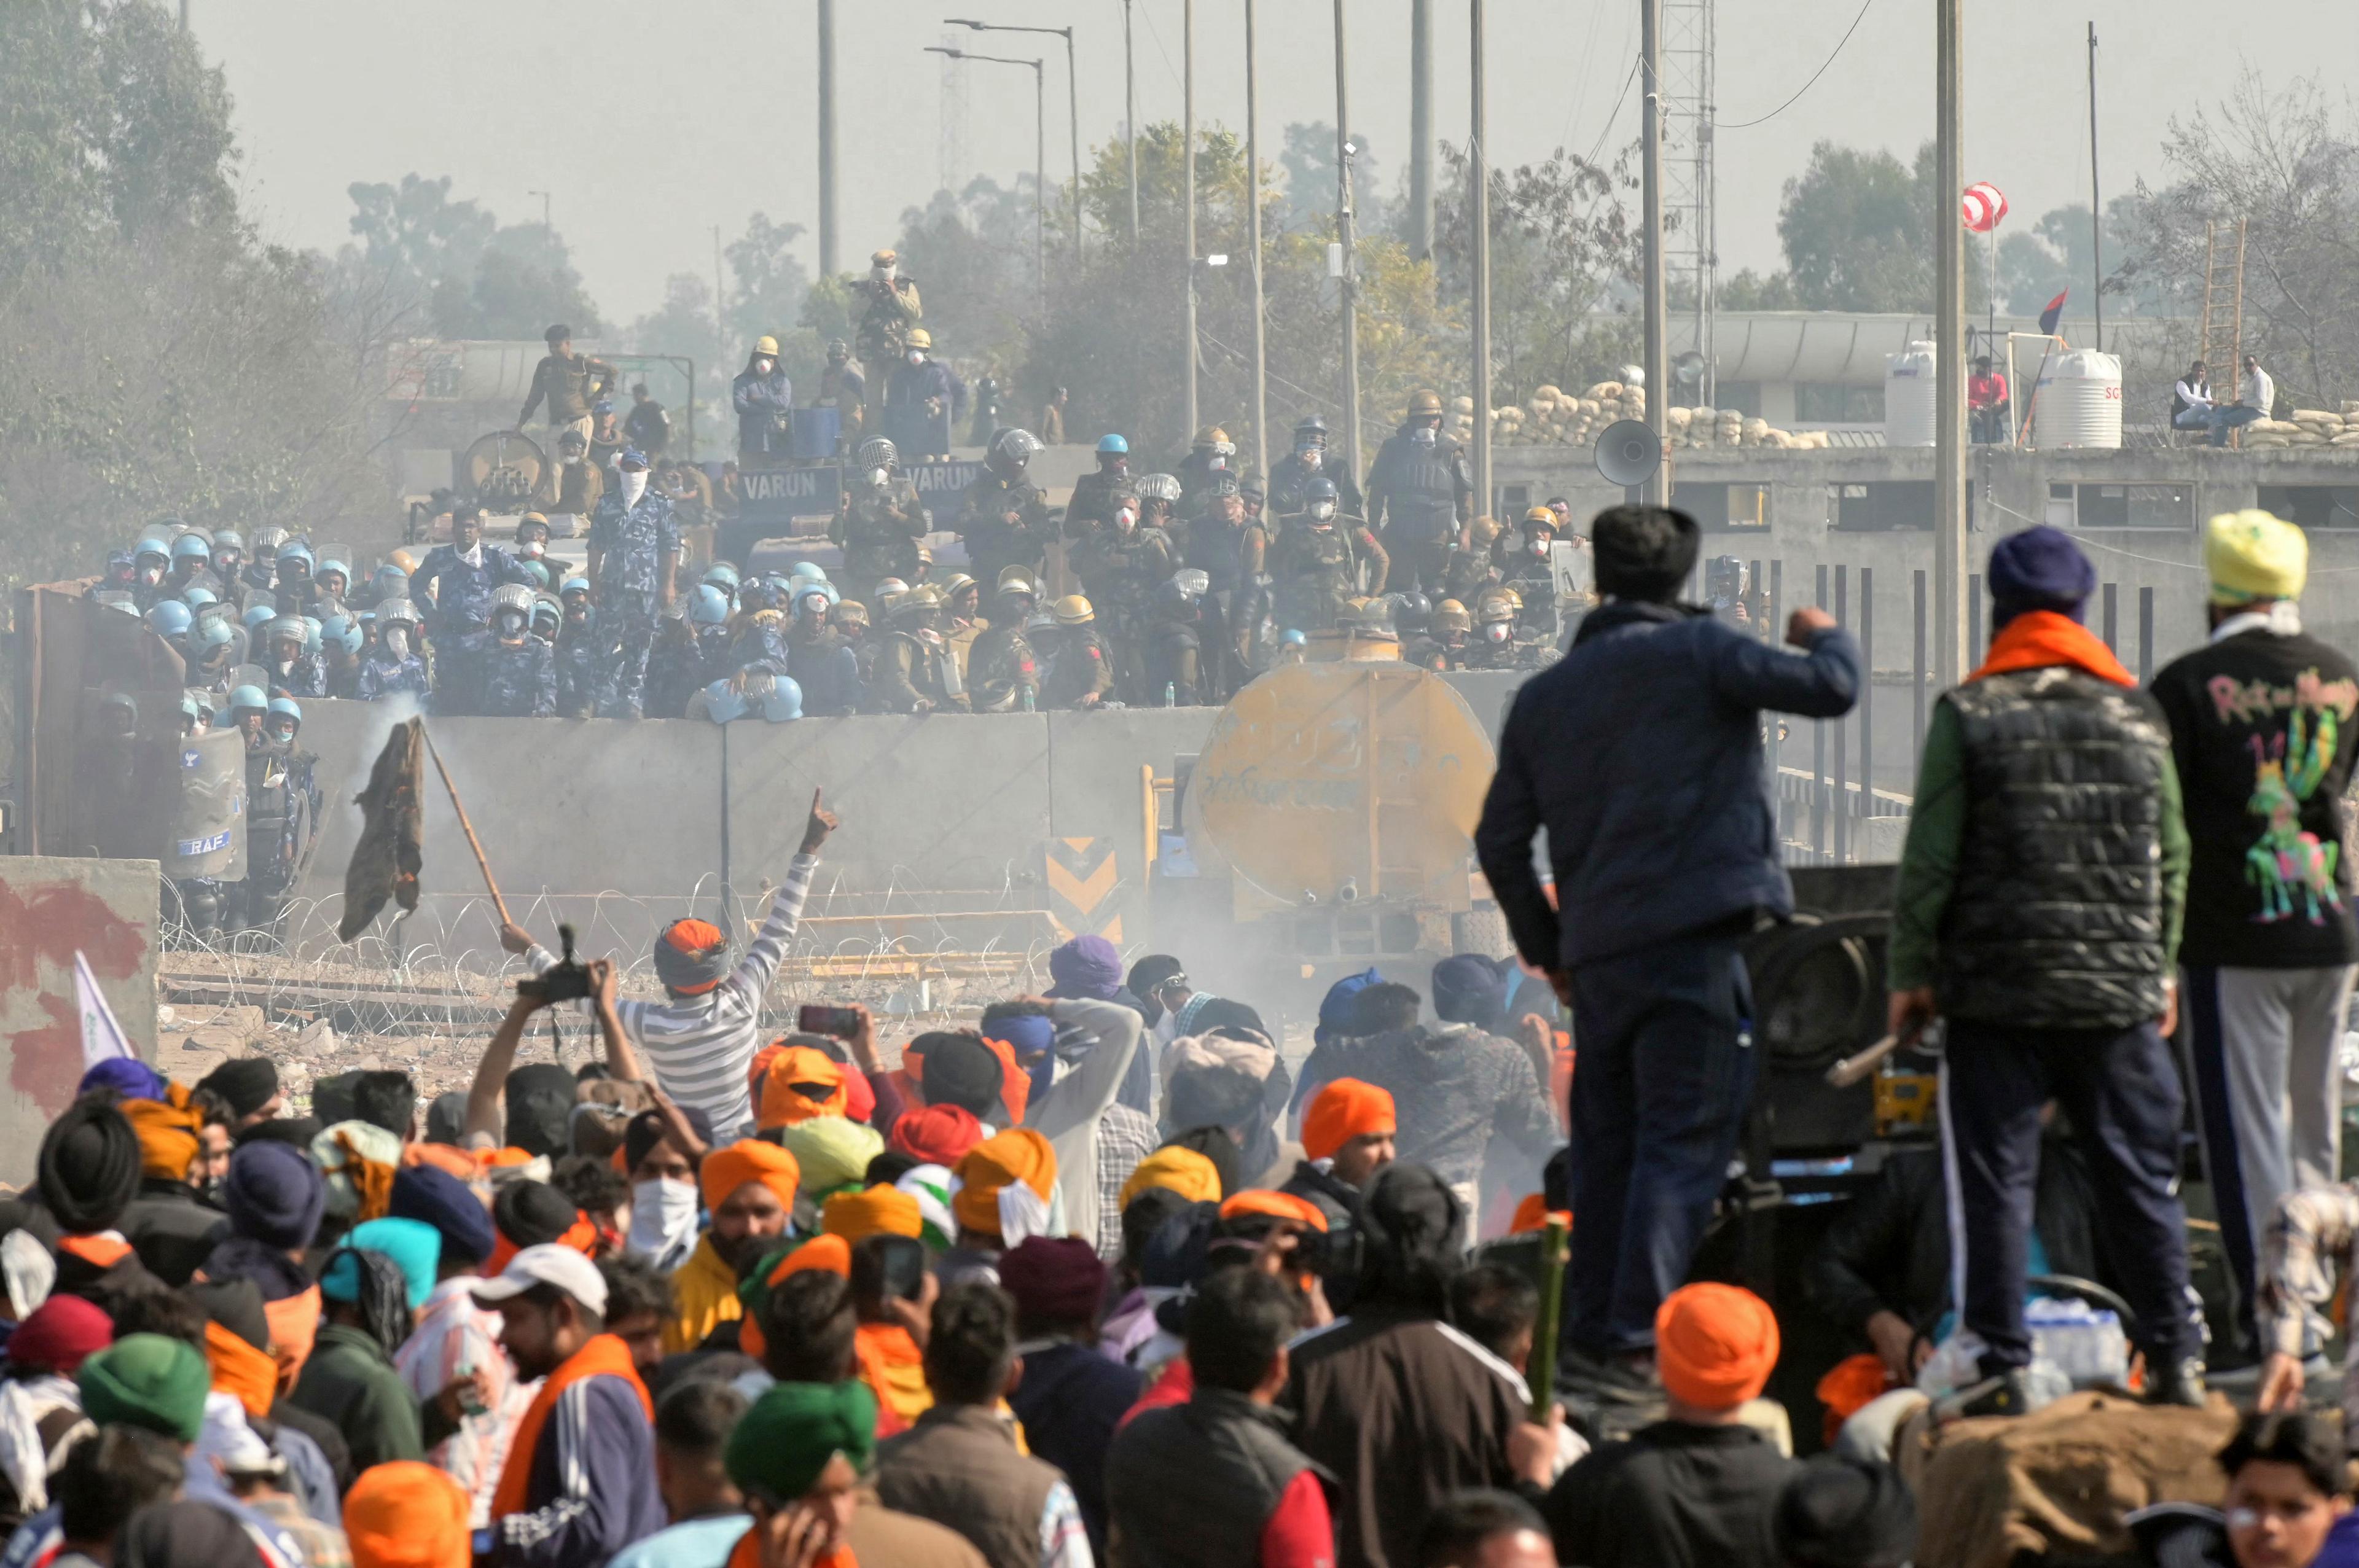 Polis och personal från Rapid Action Force (RAF) blockerar en motorväg för att hindra lantbrukare från att marschera mot New Delhi i Indien den 16 februari. Foto: Narinder Nanu/AFP via Getty Images